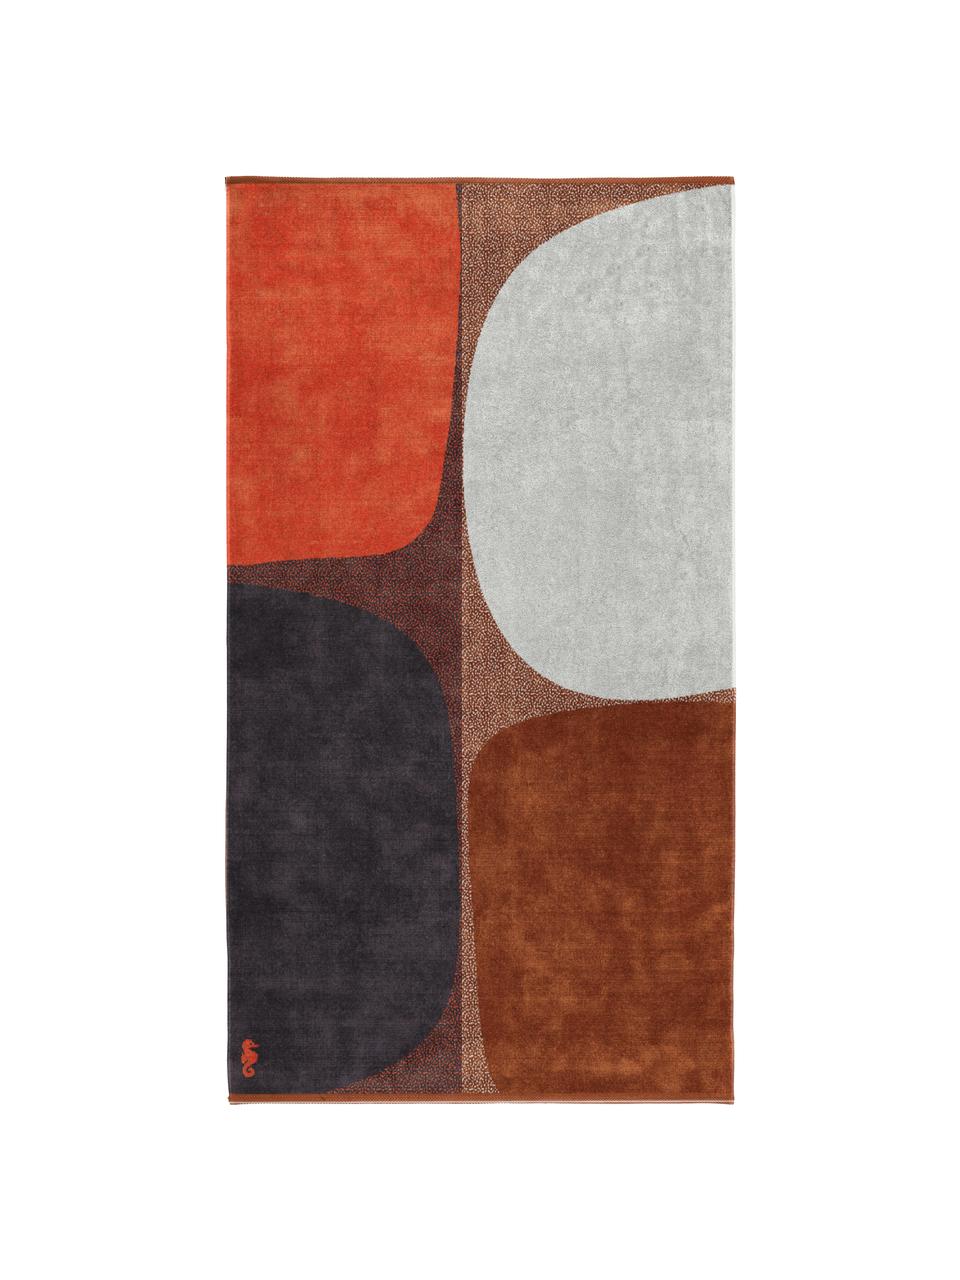 Strandlaken Stones met abstract patroon, Oranje, bruin, wit, zwart, B 100 x L 180 cm